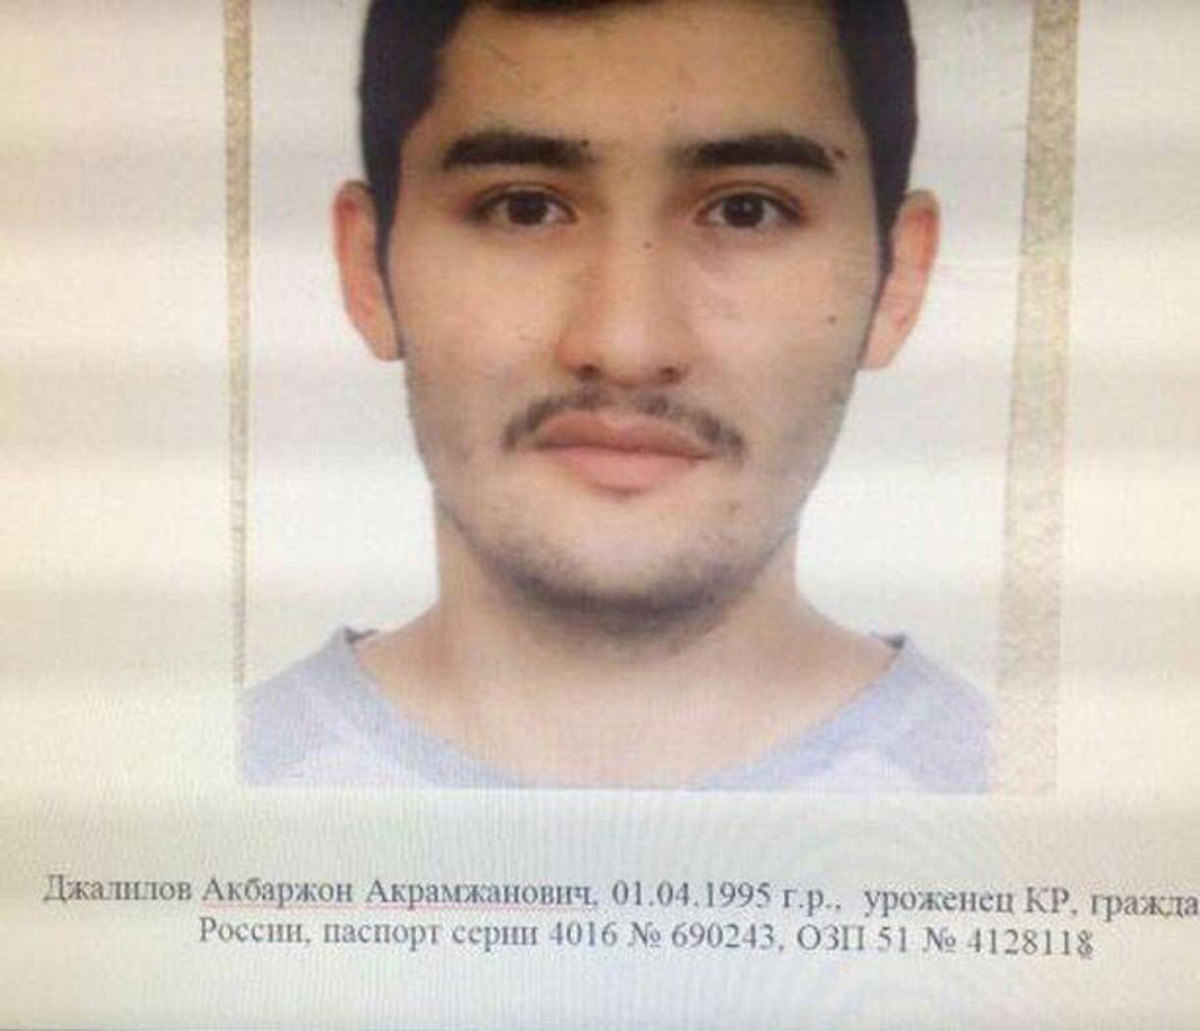 Αγία Πετρούπολη: Αναγνωρίστηκε ο βομβιστής αυτοκτονίας – Ρώσος πολίτης από το Κιργιστάν